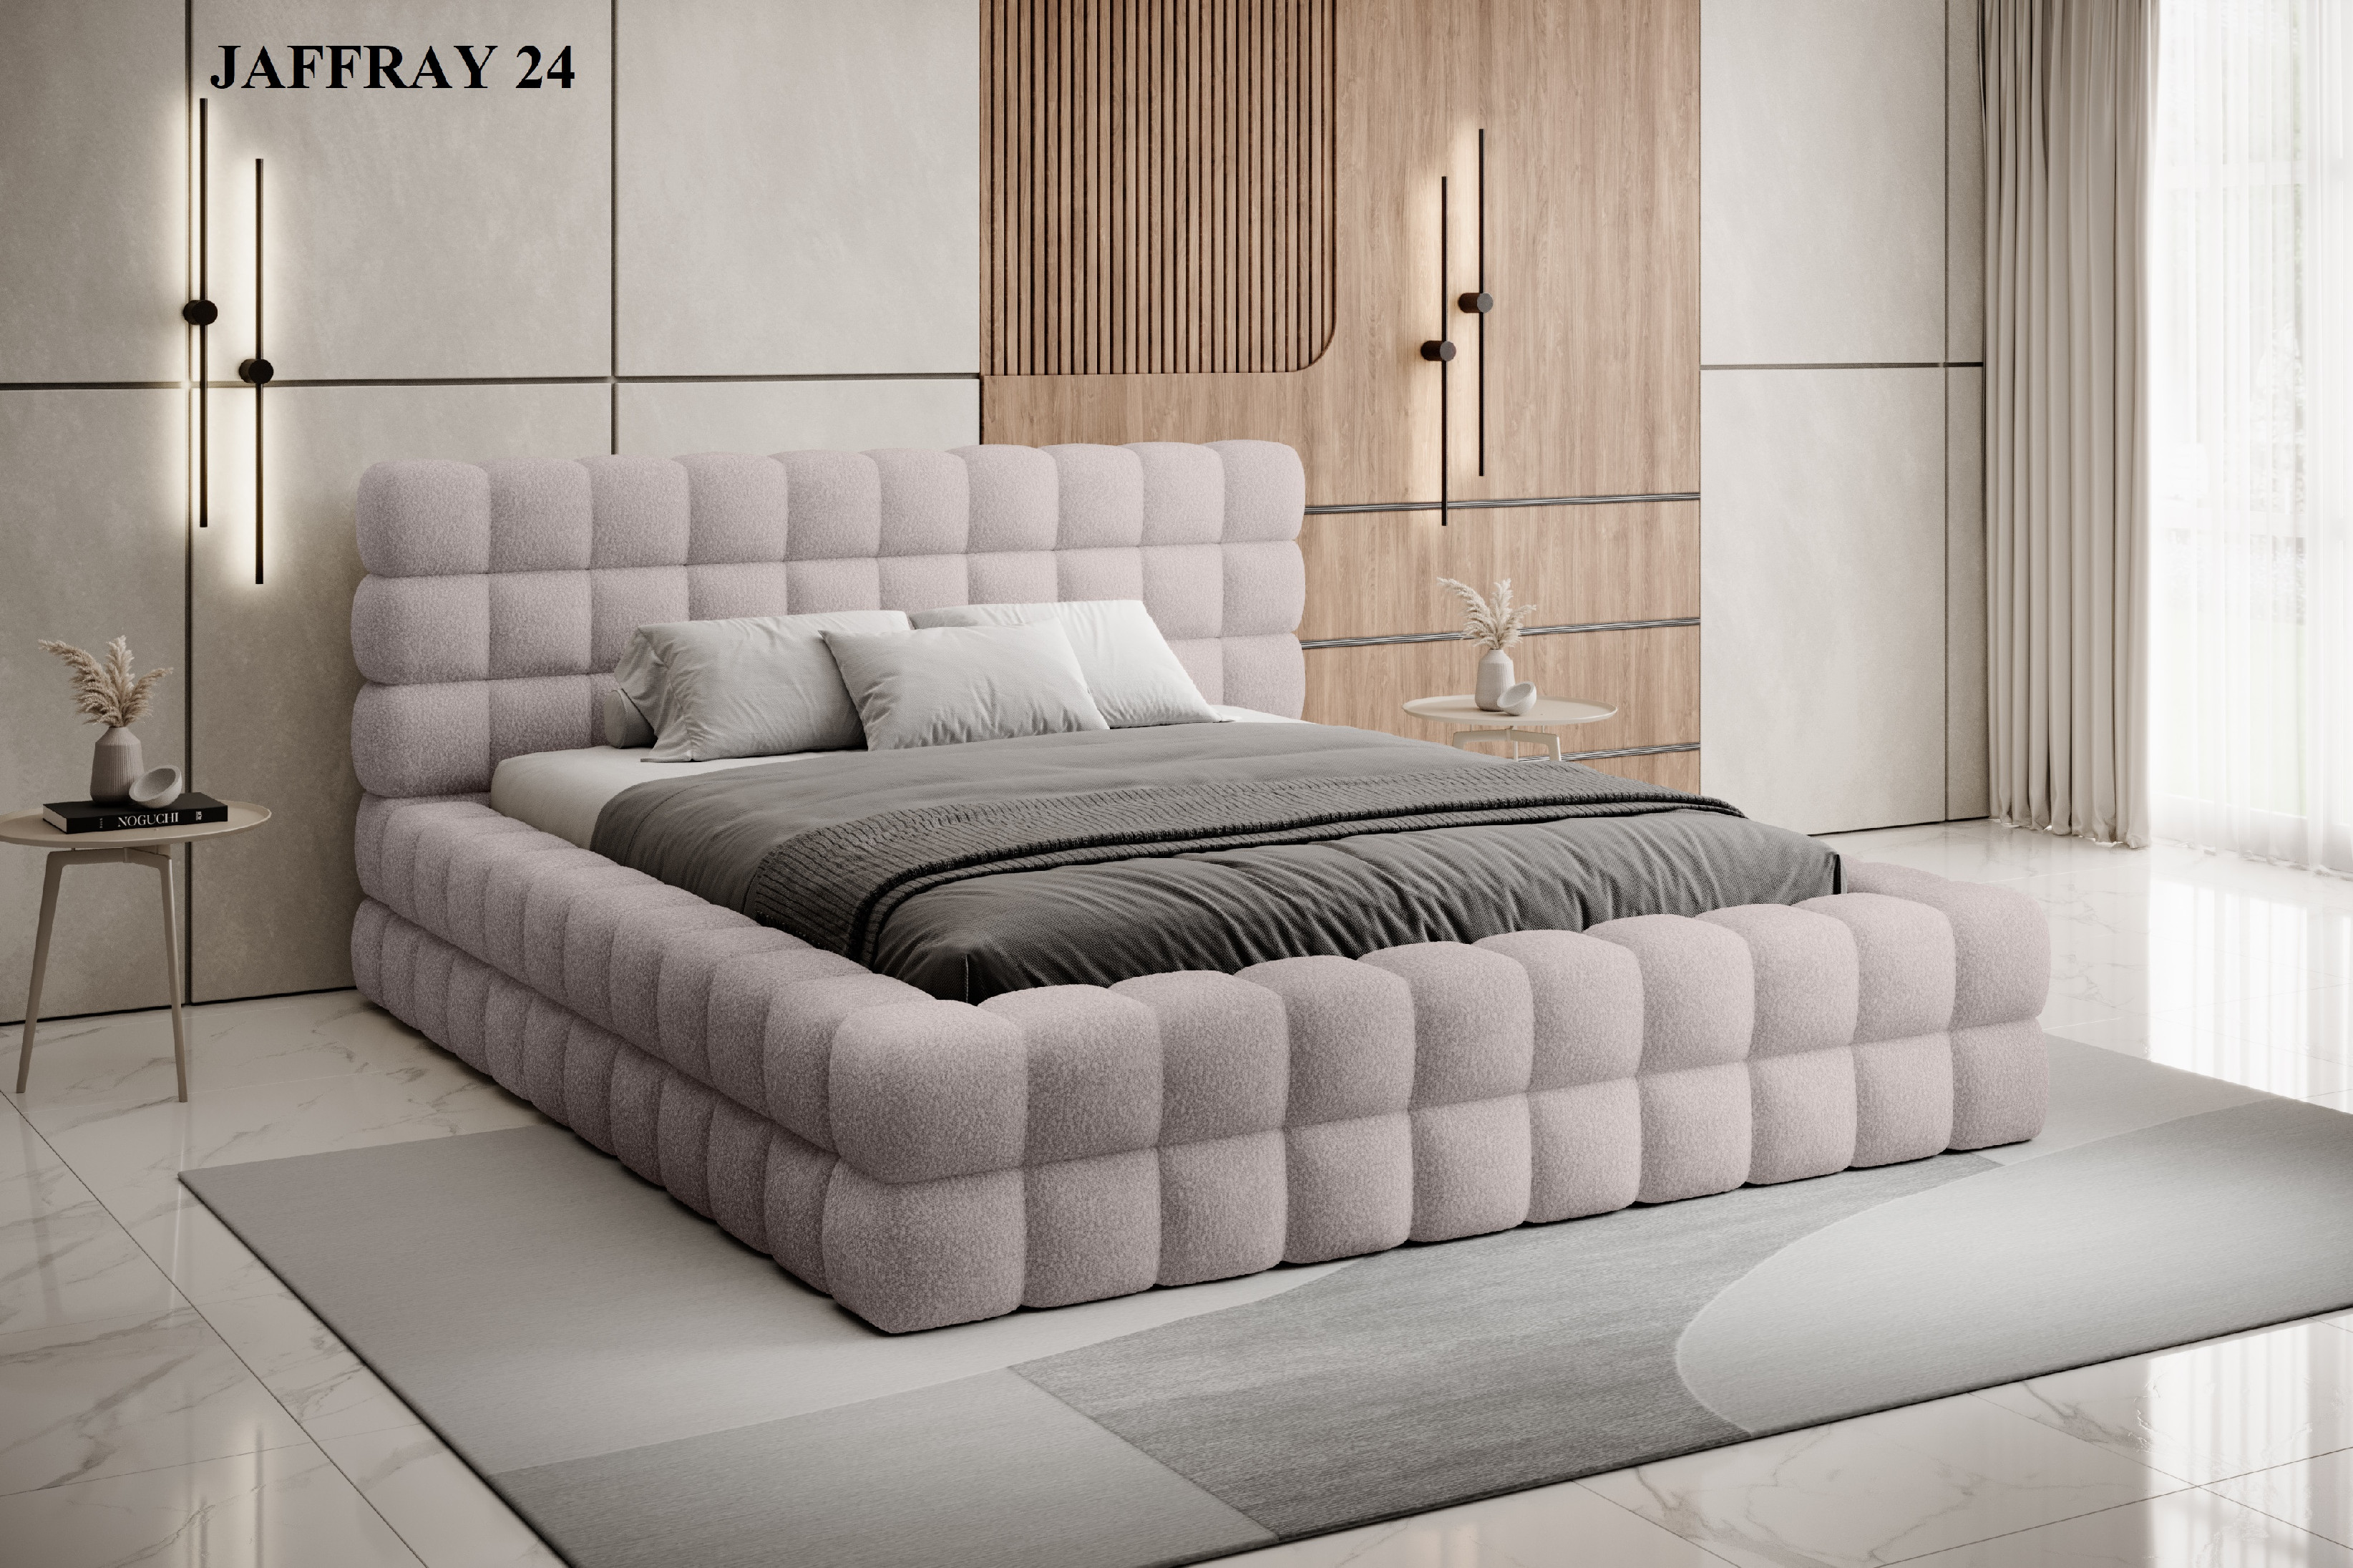 Čalouněná postel DIZZLE 160x200 cm Jaffray 24